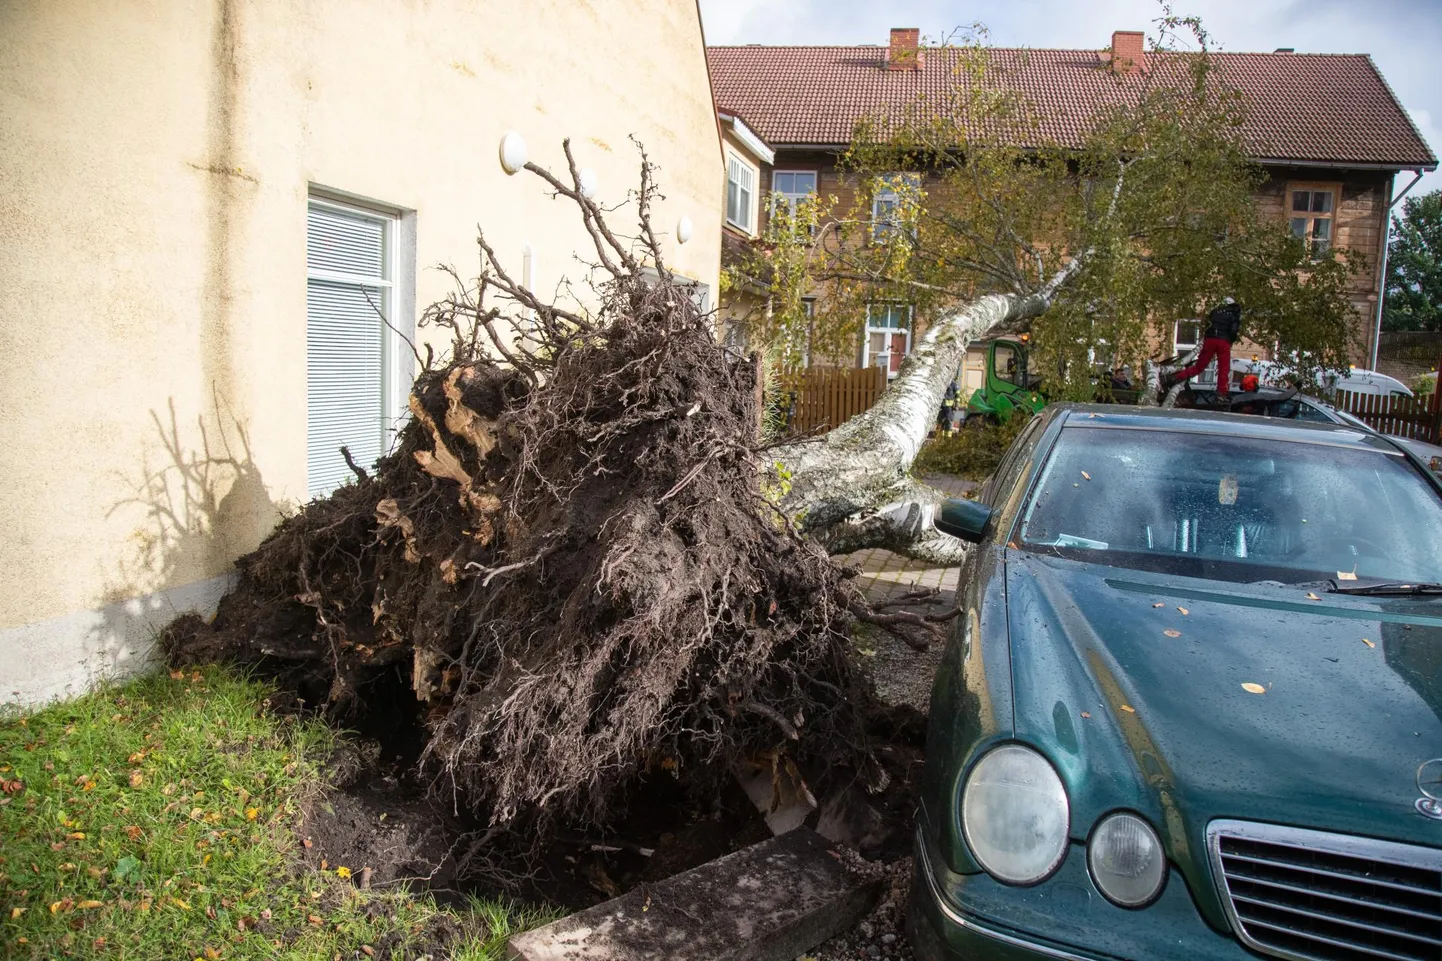 Murdunud puud teevad kõikjal pahandust, see puu langes Viljandis täna keskpäeval autole.